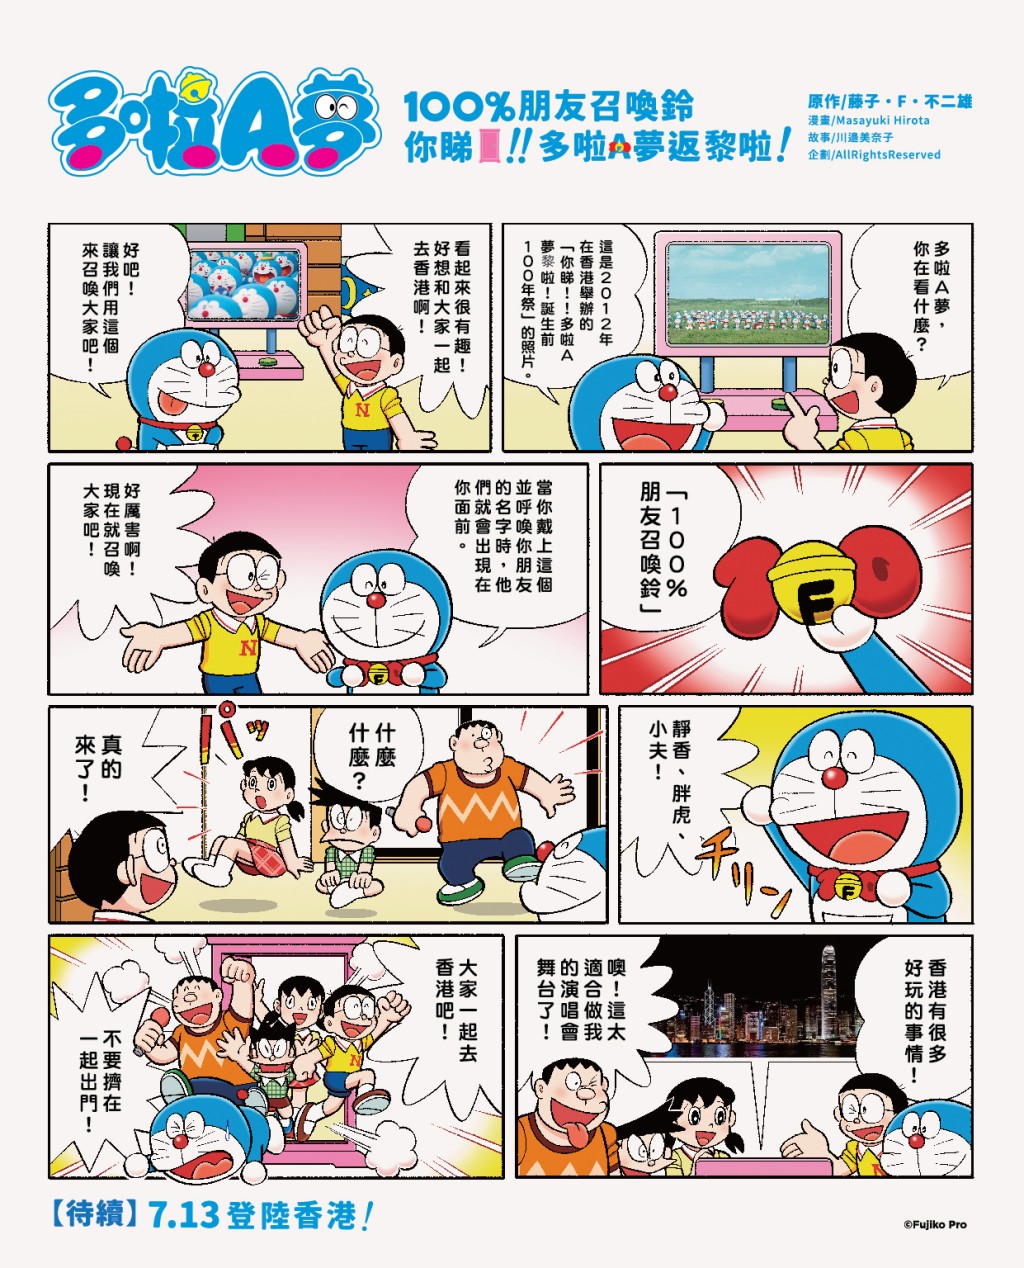 Doraemon 100 FB图片